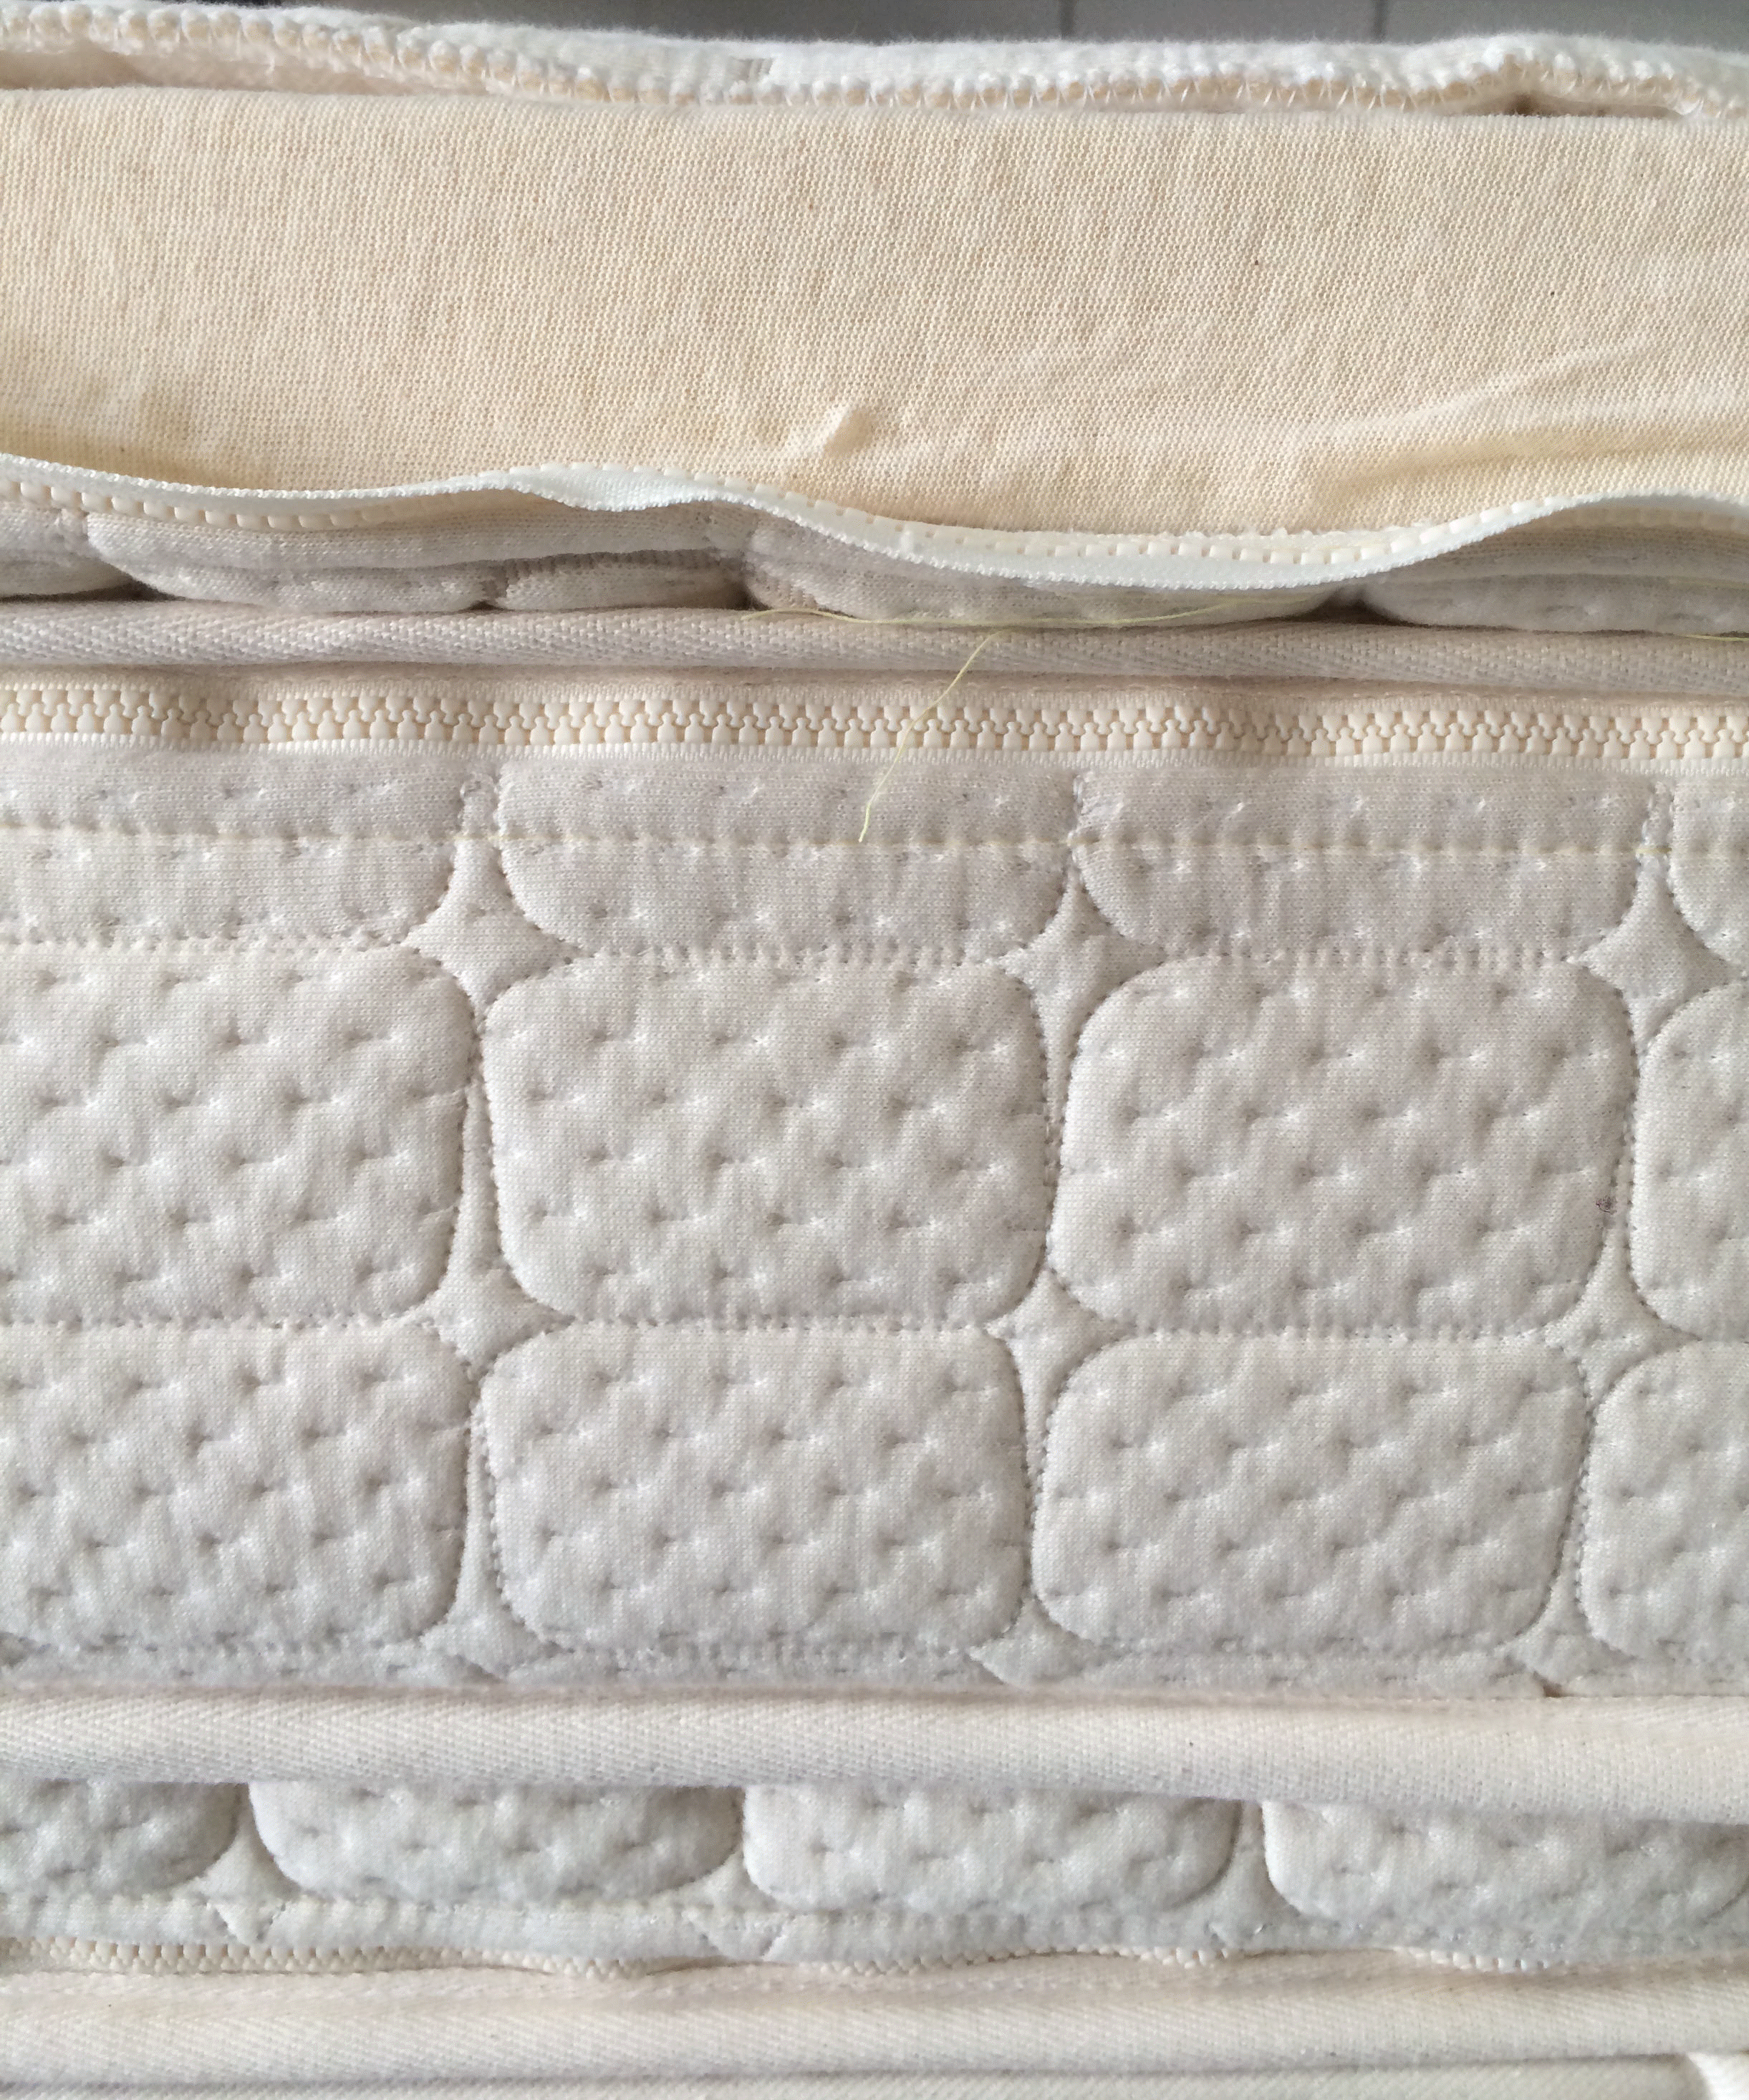 peoria latex mattresses